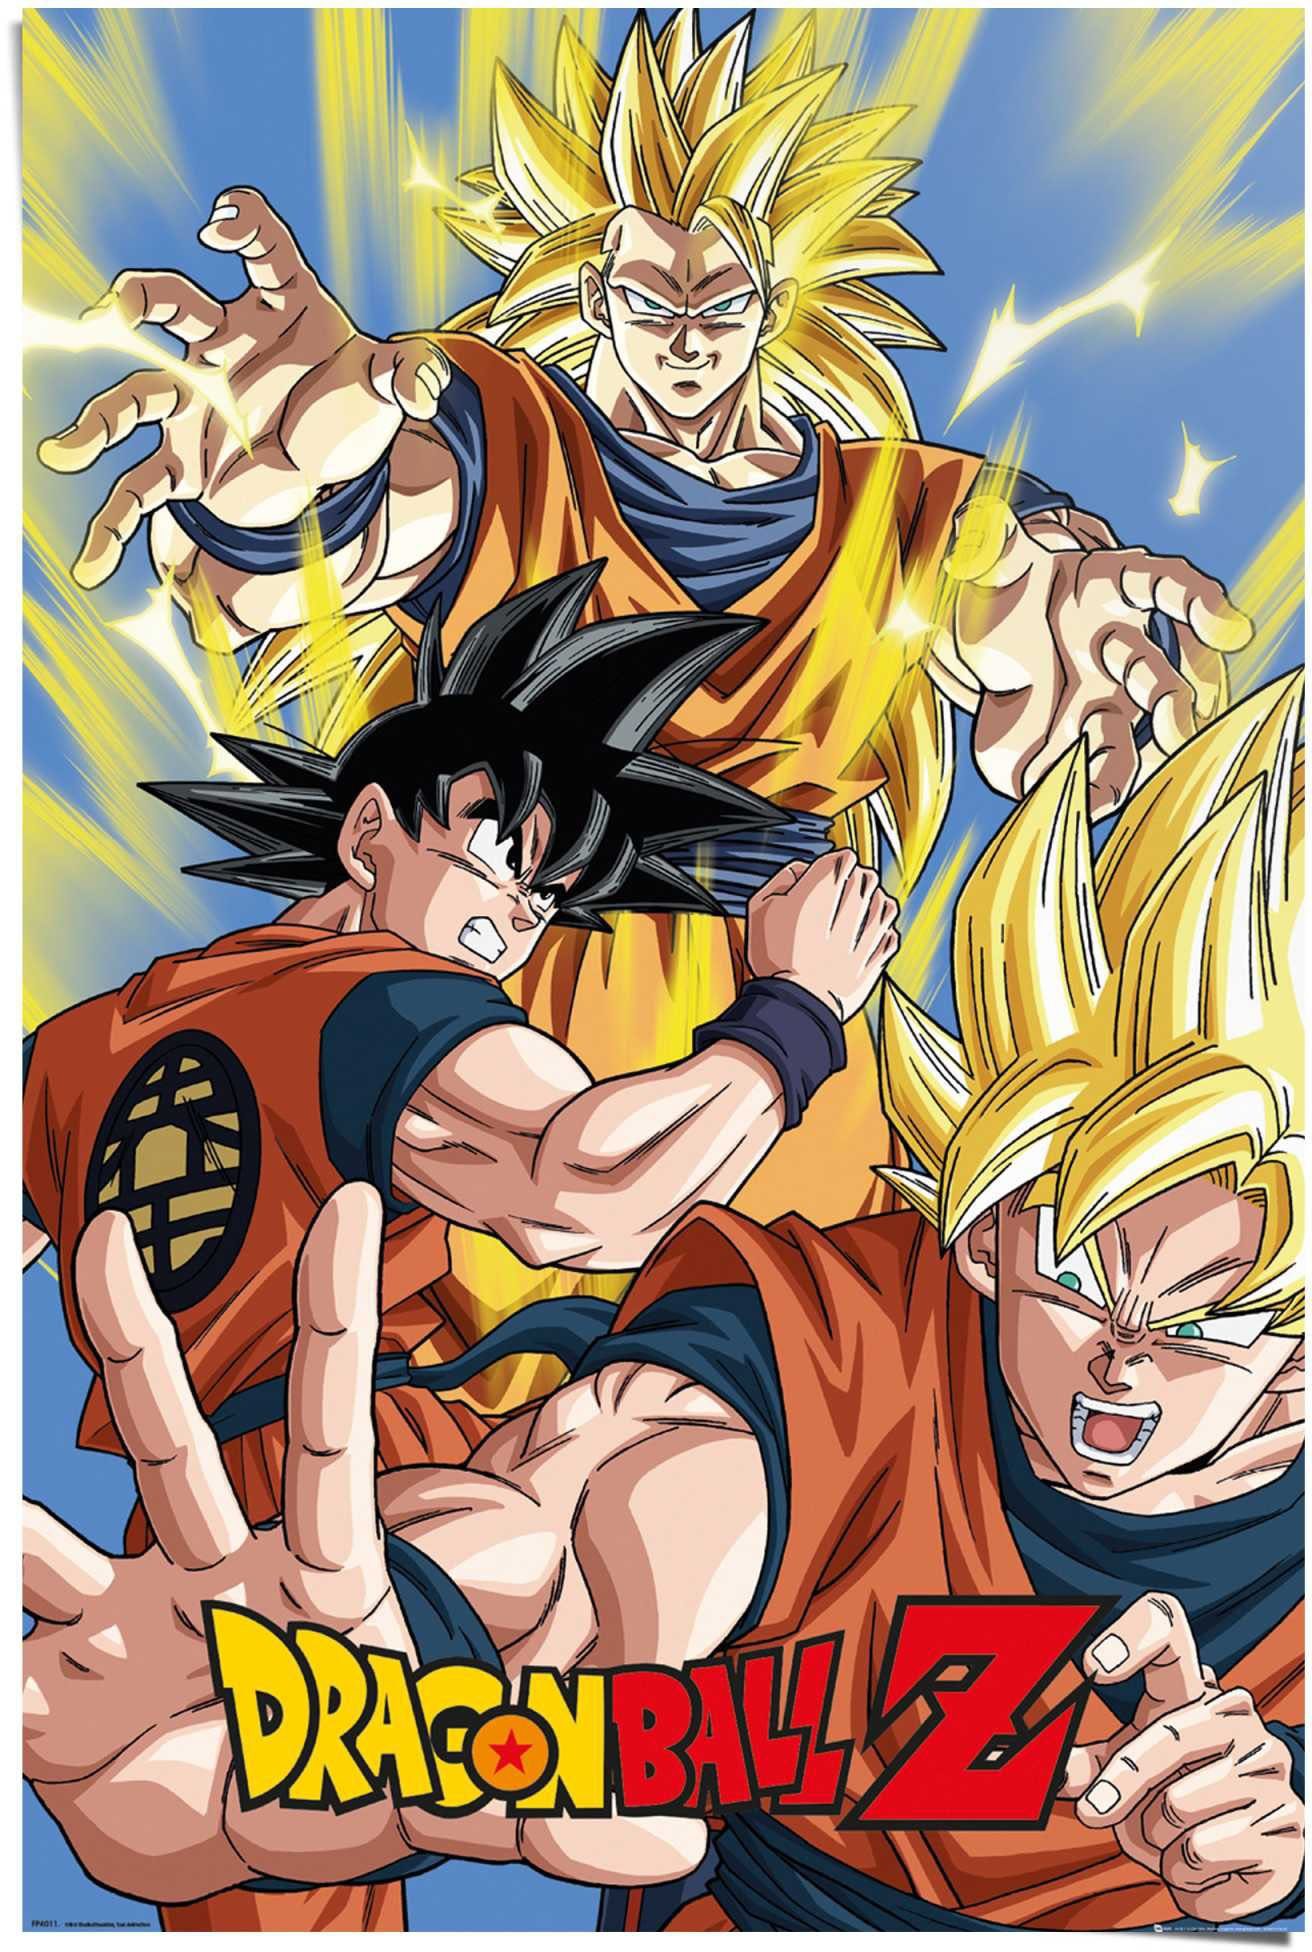 Reinders! Poster Dragon Ball Z Goku in de online shop | OTTO